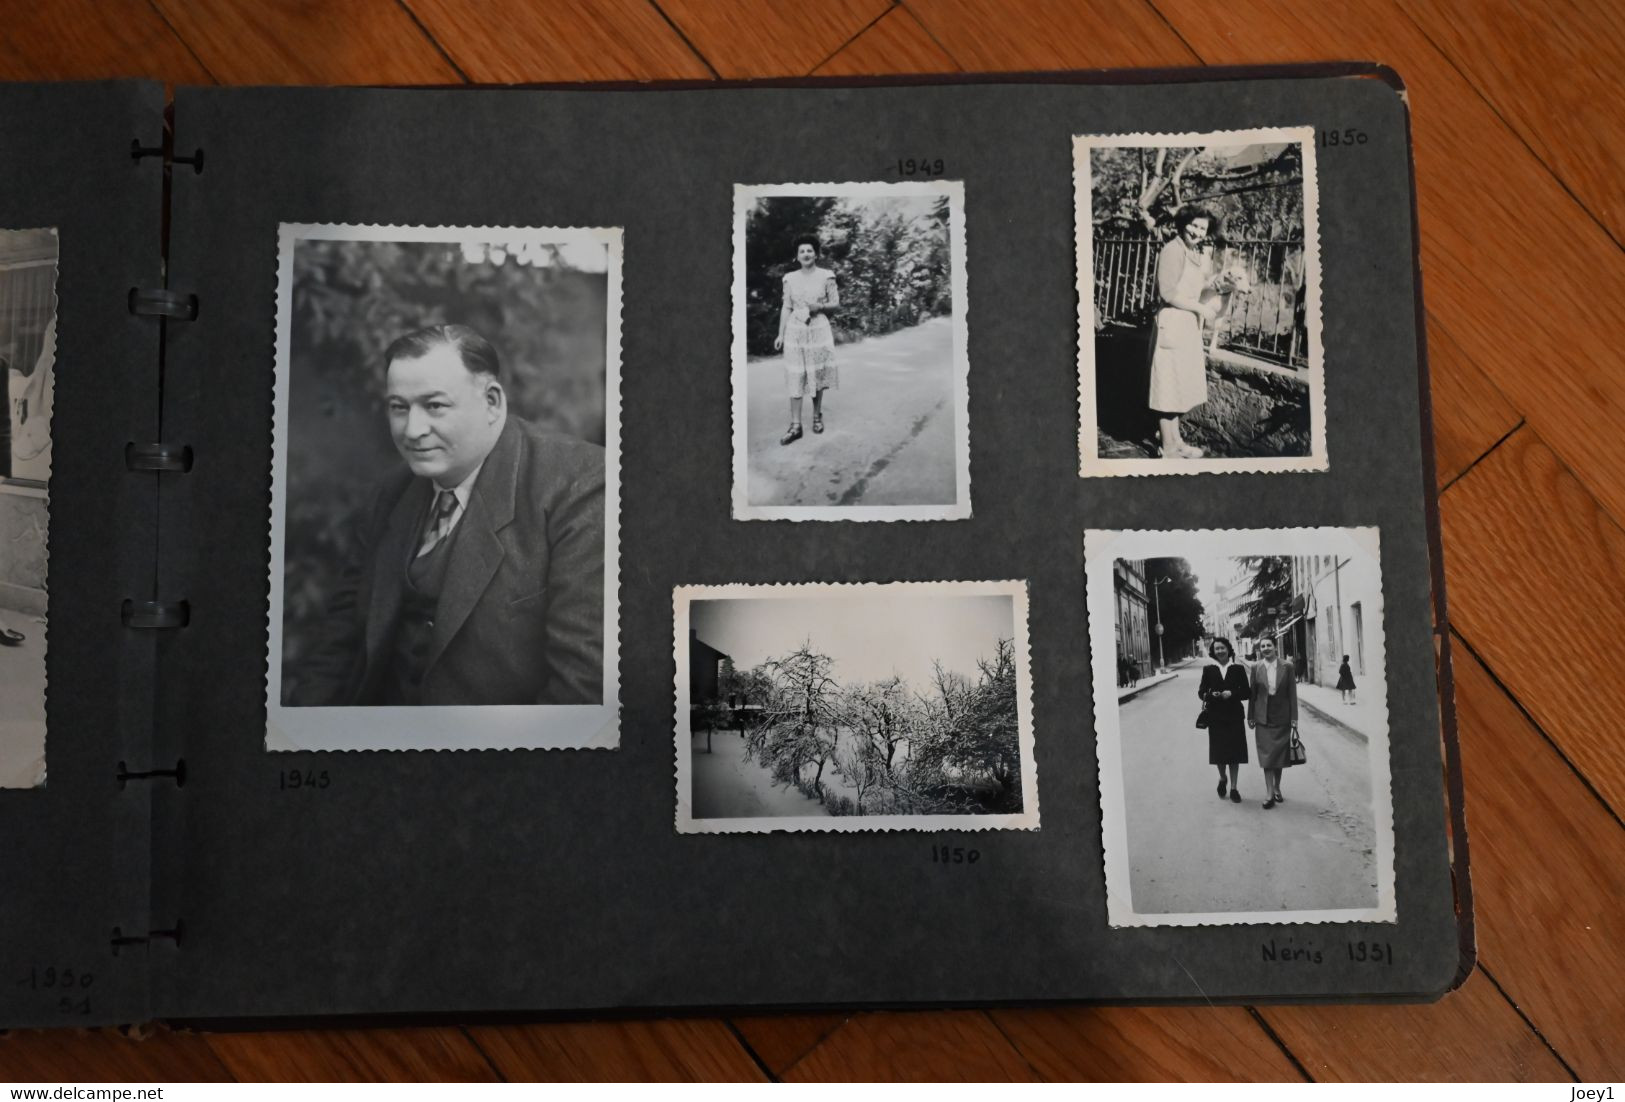 1 Album famille 160 photos des années 40 jusqu'en 1953..avec annotation des lieus